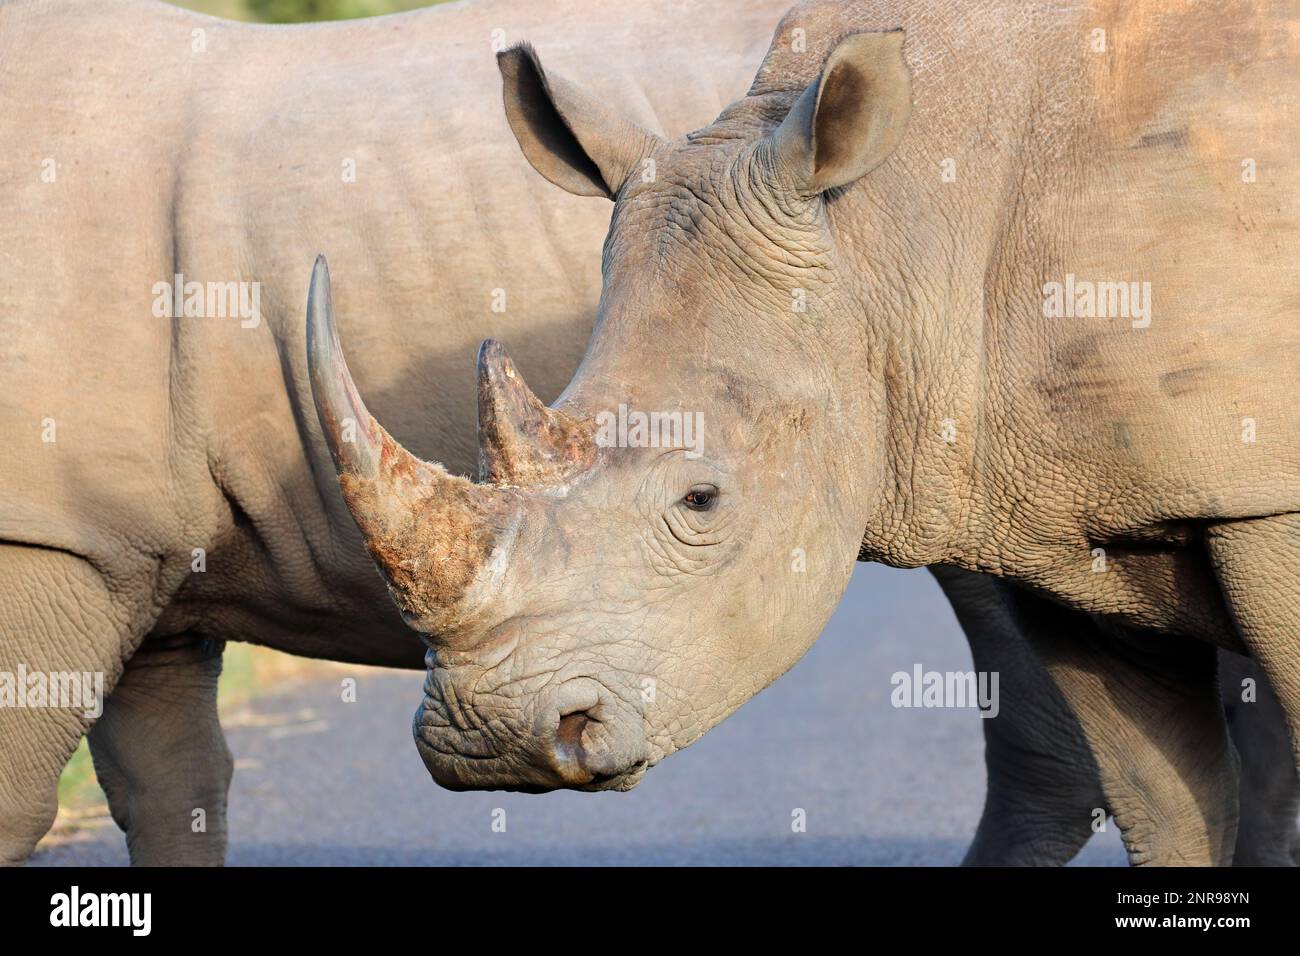 Ritratto su un rinoceronte bianco in via di estinzione (Ceratotherium simum), Sudafrica Foto Stock